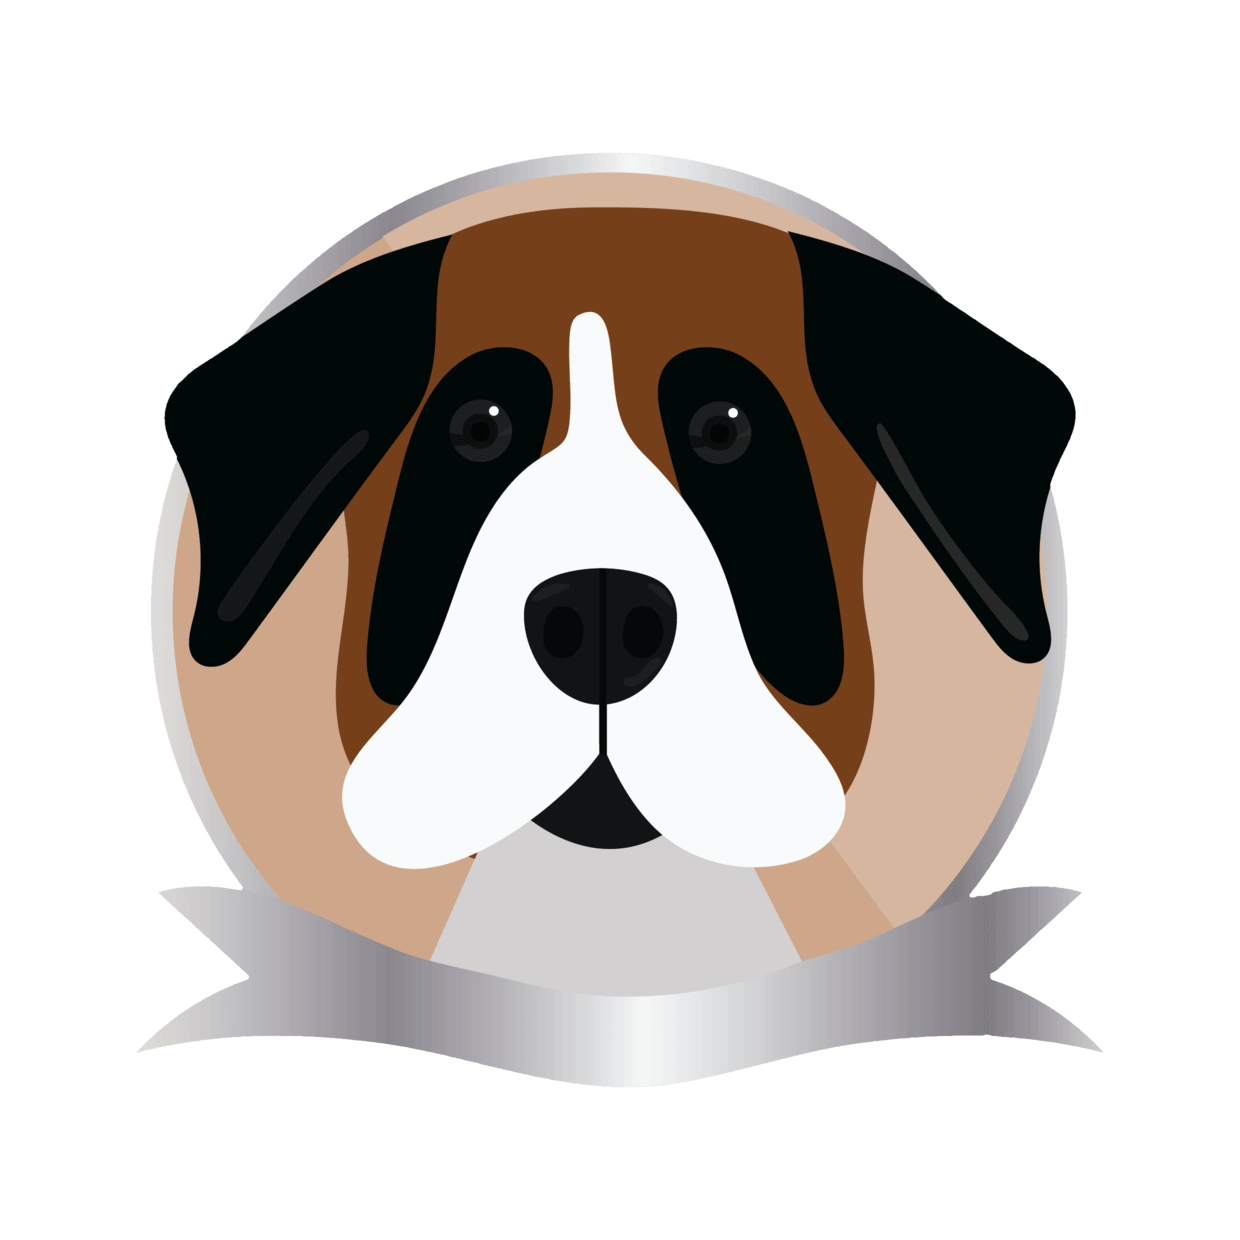 Caricatura razze di cani - dog blog addestramento cani - the collienois by samayo - Addestrare un cane - Alimentazione del cane - cura del cane 12